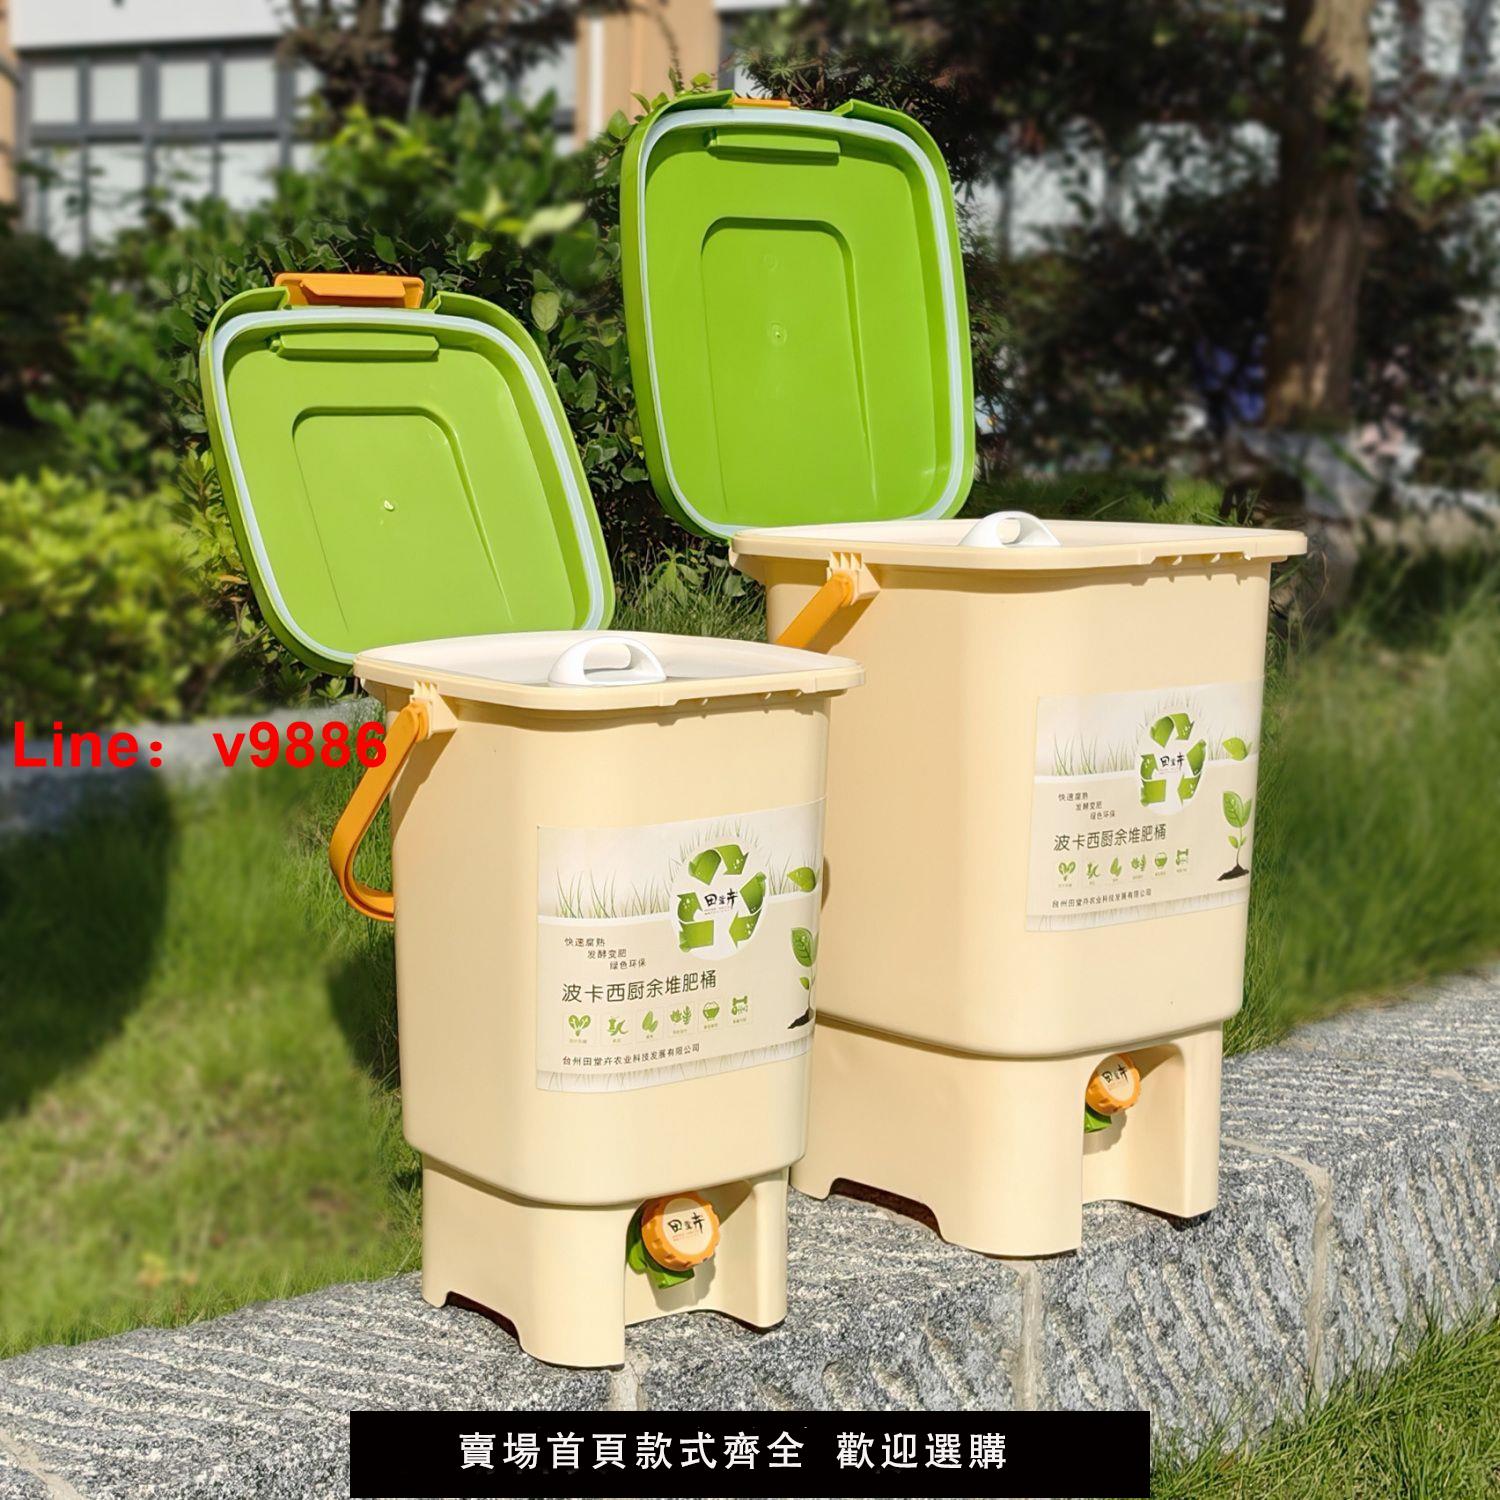 【台灣公司 超低價】堆肥桶發酵桶波卡西廚余漚肥桶有機垃圾處理自制堆肥EM菌雙蓋凹槽